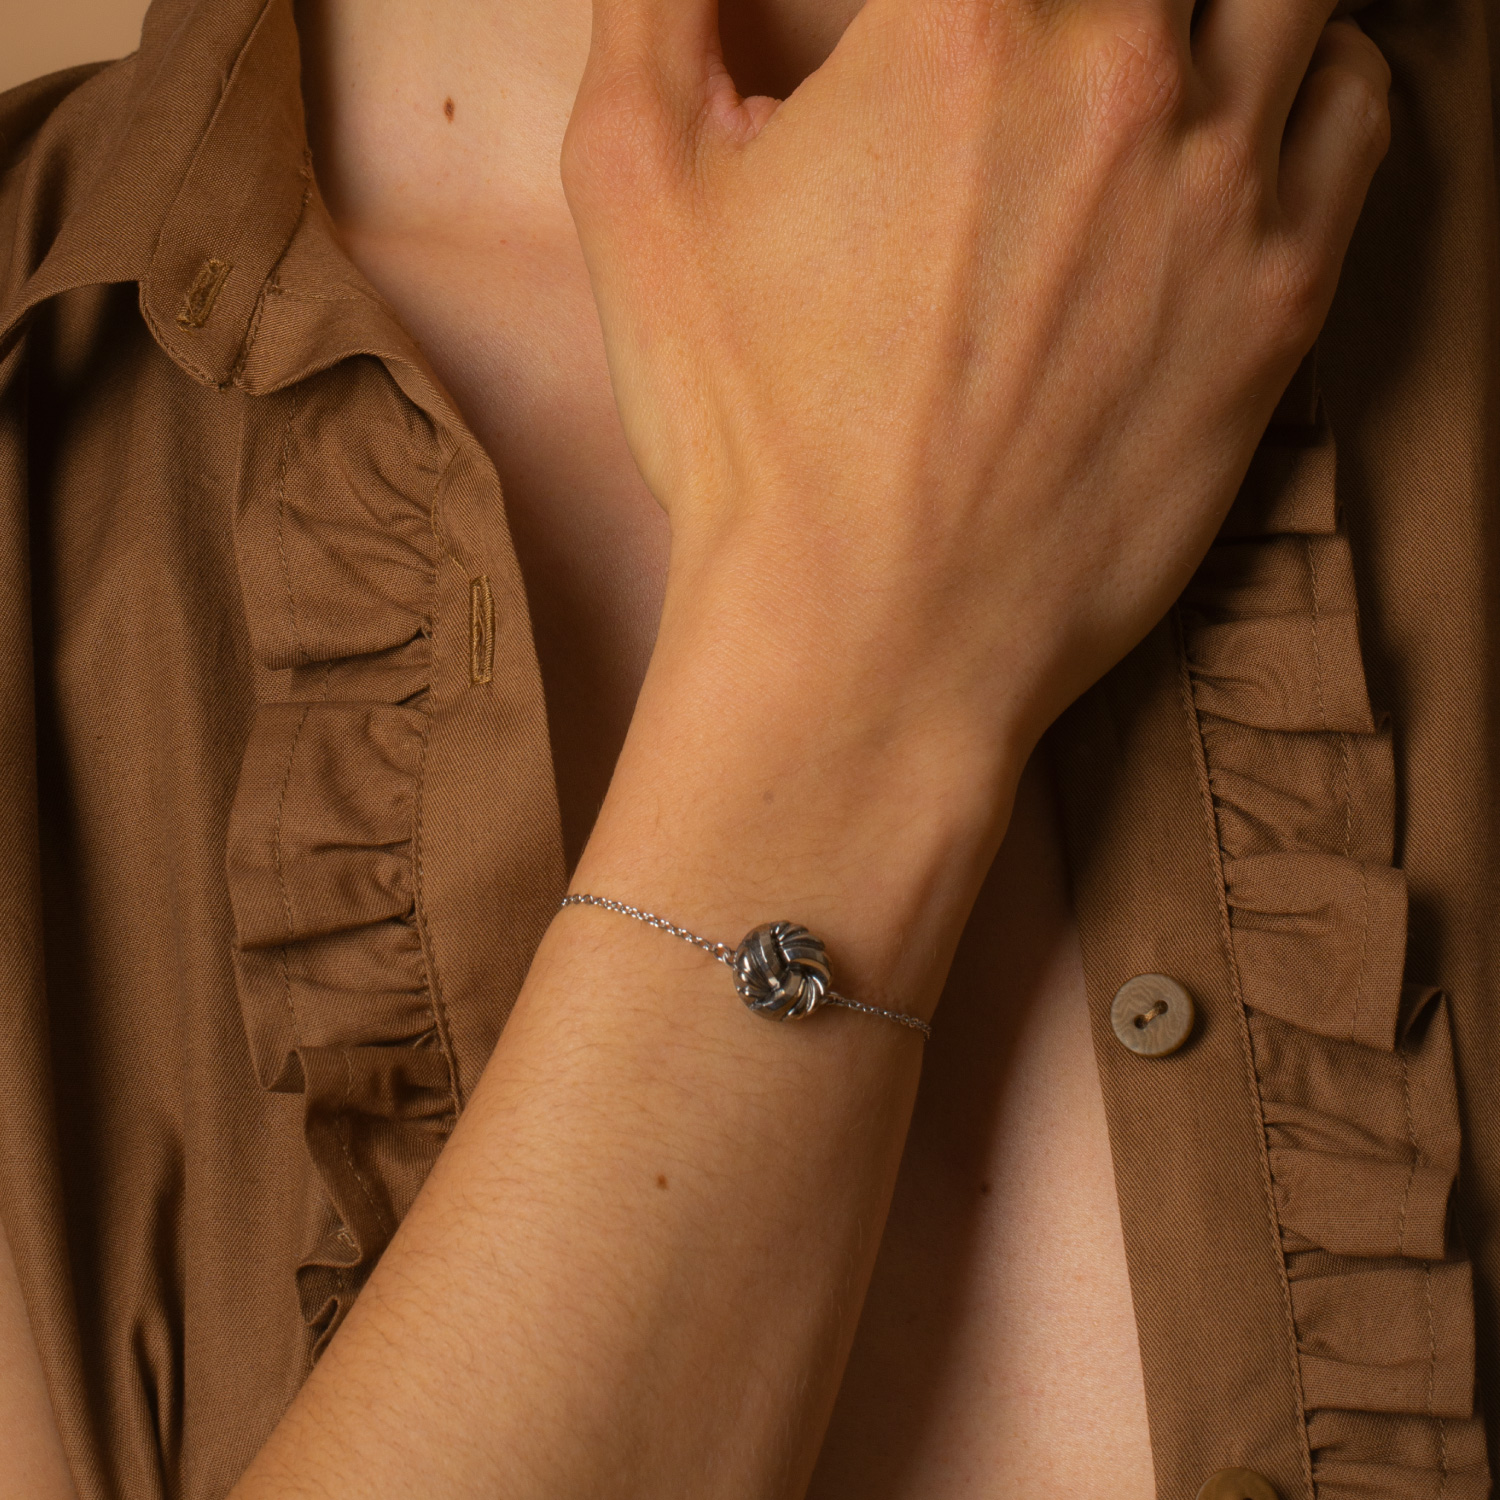 assuna-etoile-bracelet-chaine-simple-bouton-ancien-paula-argent-look-02-web